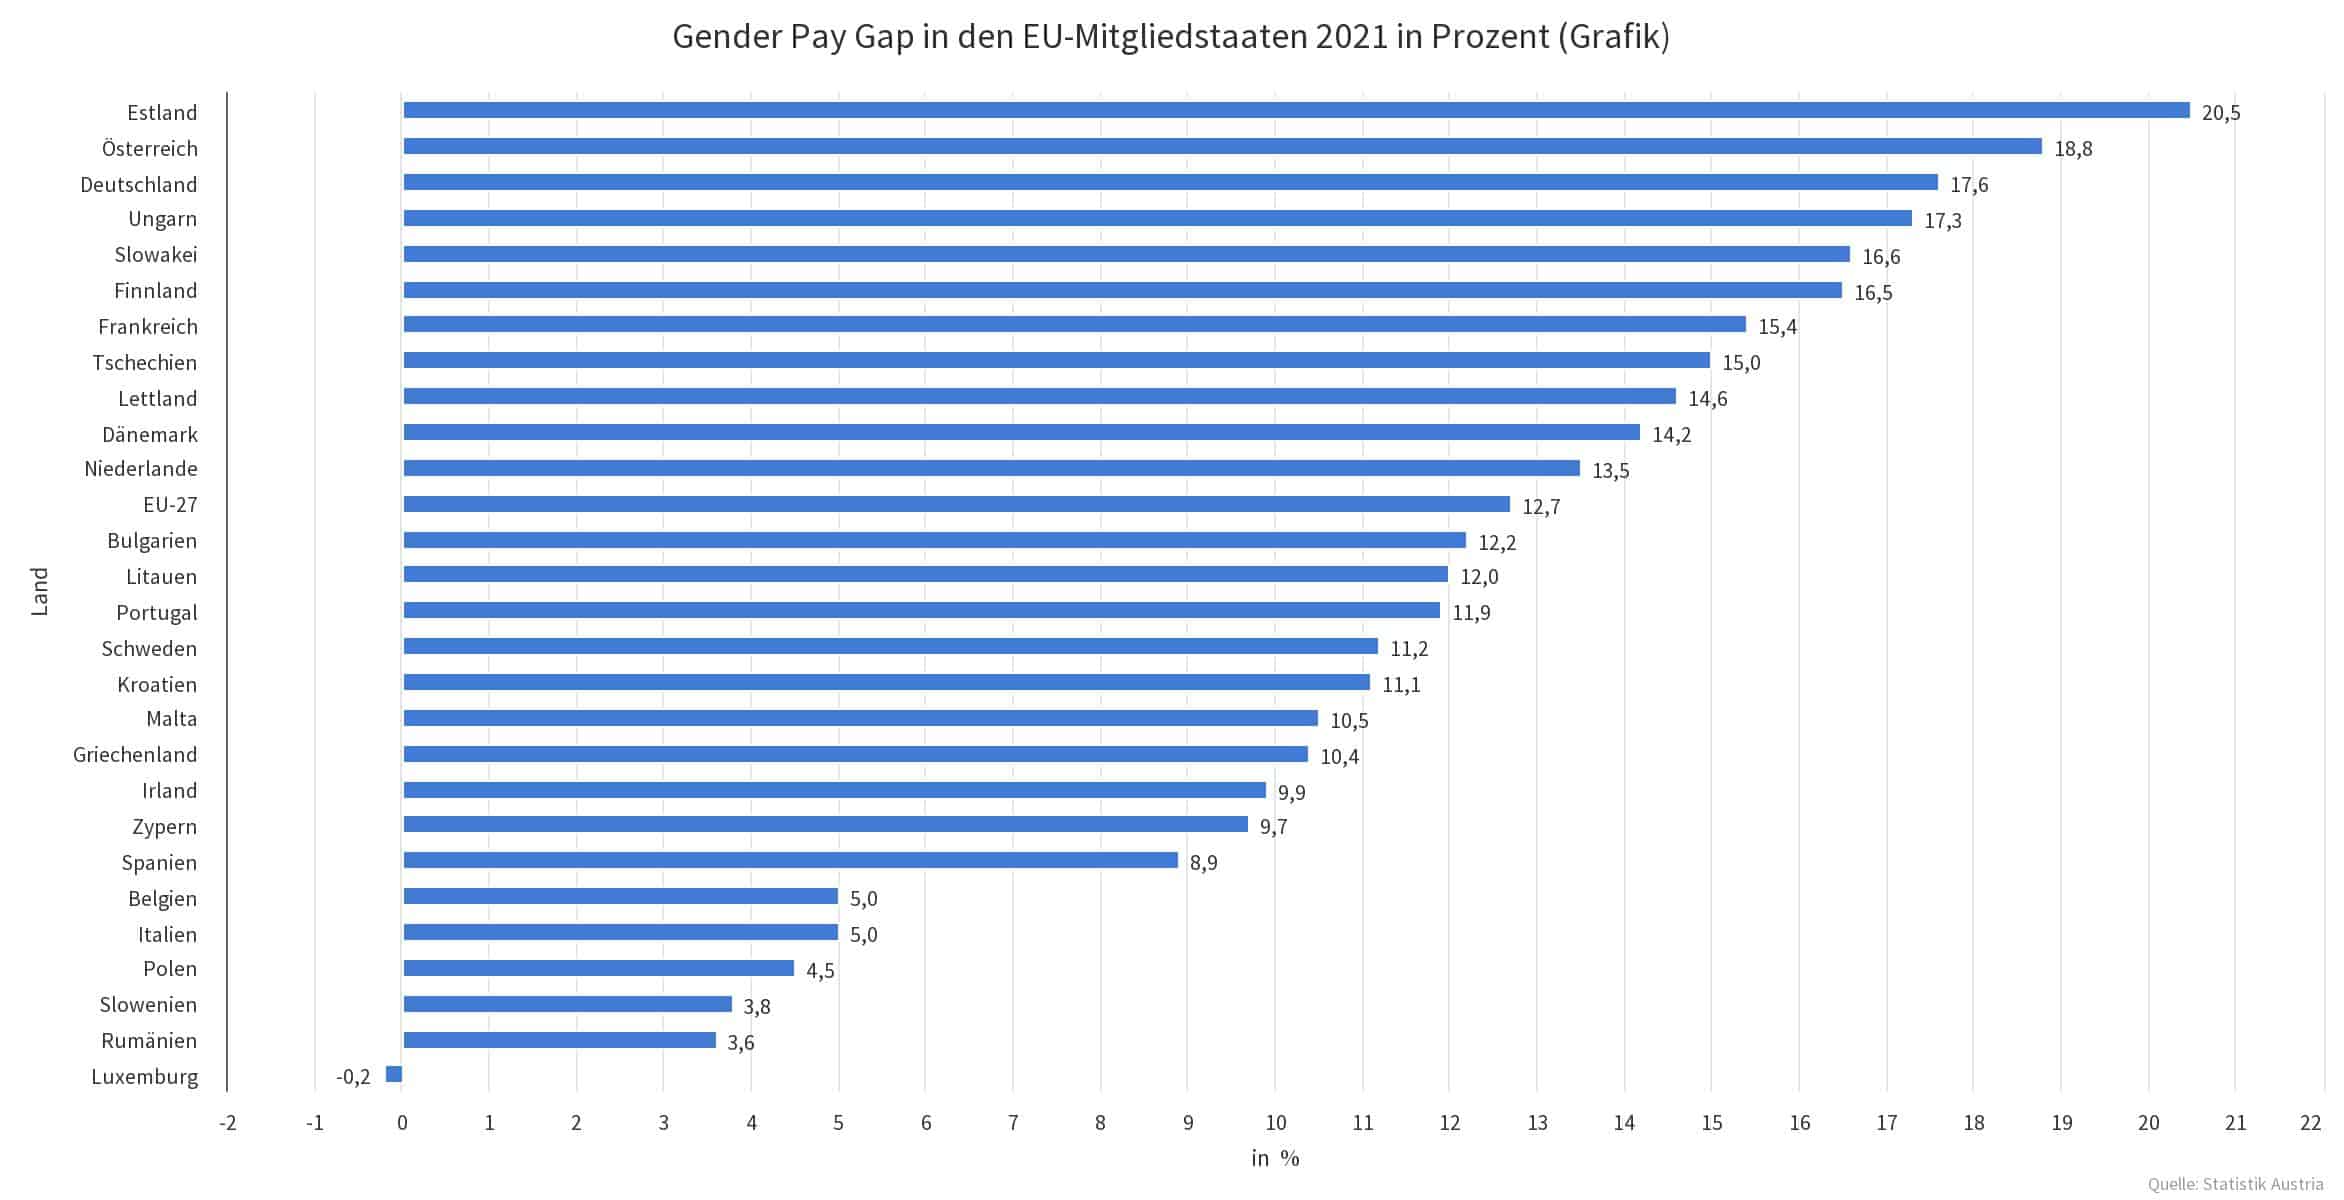 Unterschiedliche Niveaus an Chancengleichheit in Europa. Gender Pay Gap in den EU-Mitgliedstaaten 2021 in Prozent (Grafik)